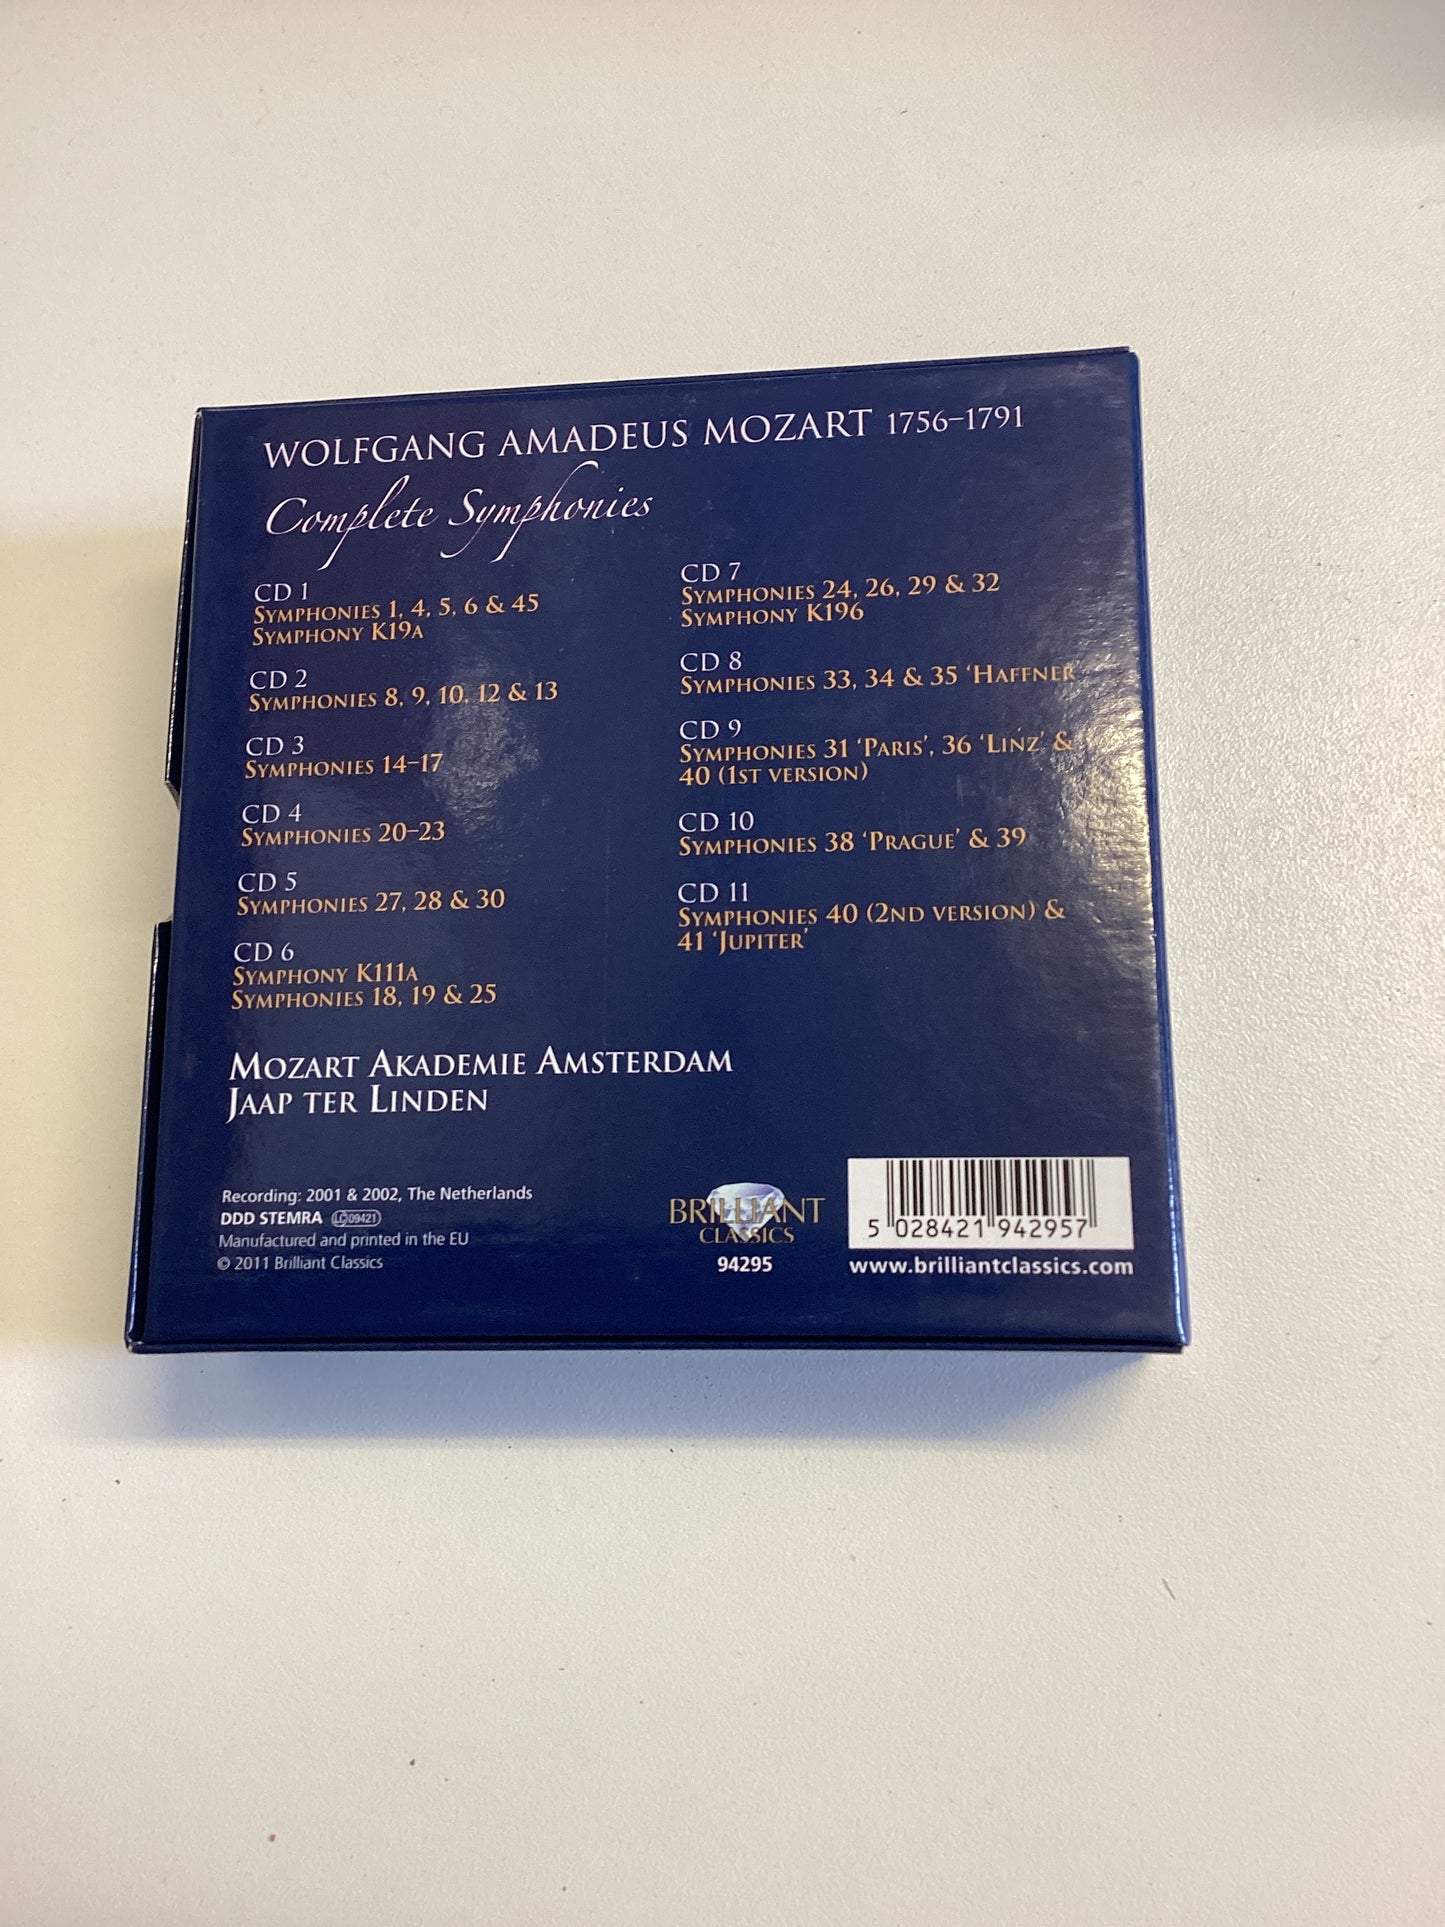 Mozart Complete Symphonies 11 CDs